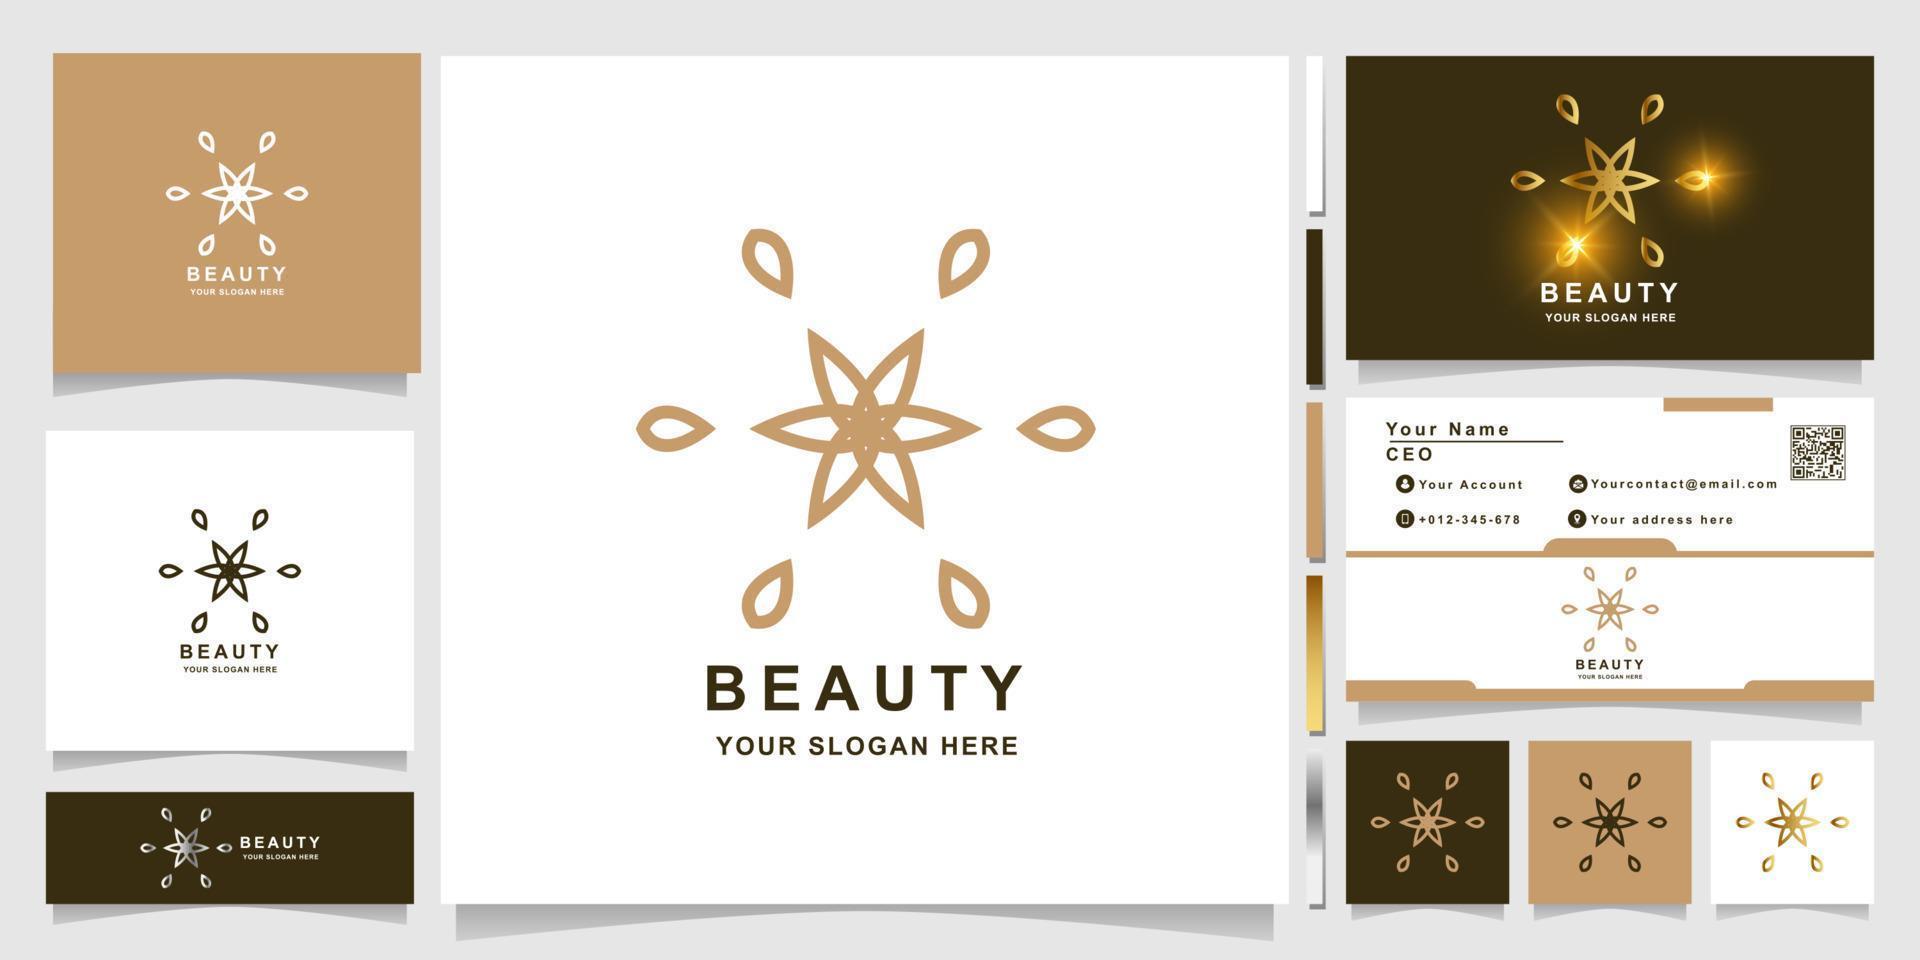 Beauty-, Blumen-, Boutique- oder Ornament-Logo-Vorlage mit Visitenkarten-Design. kann für Spa-, Salon-, Schönheits- oder Boutique-Logo-Design verwendet werden. vektor